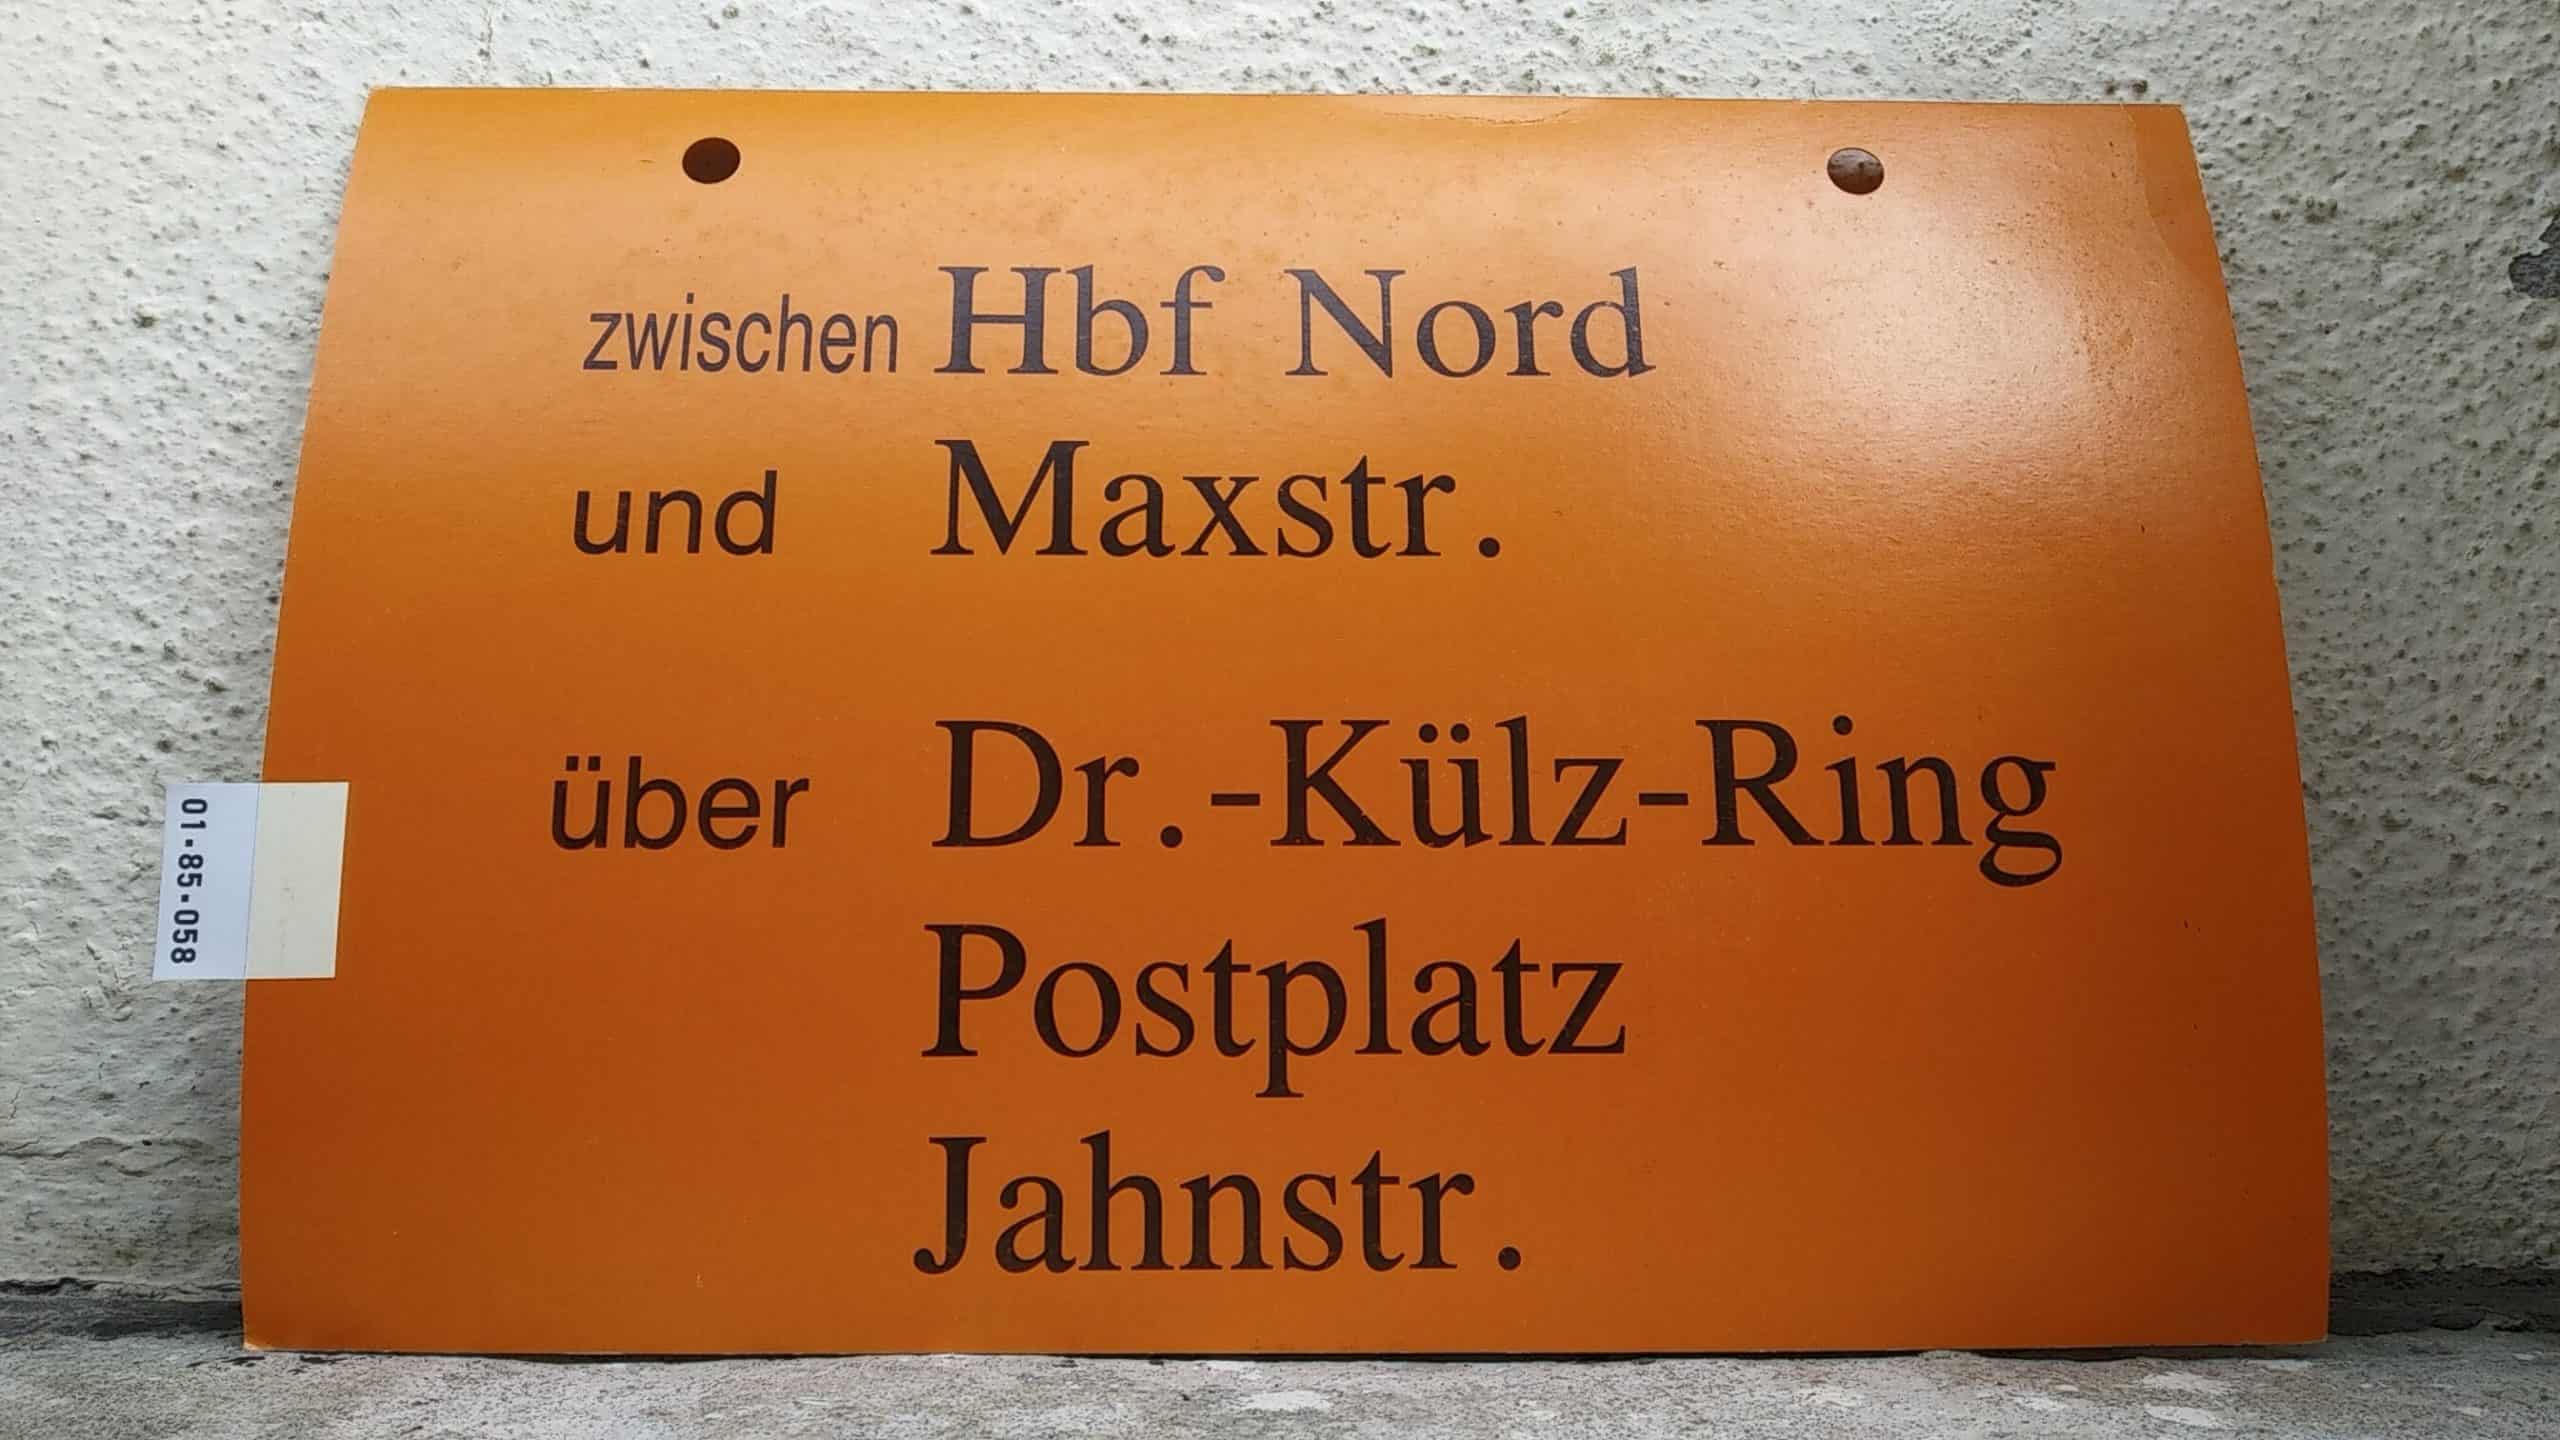 Ein seltenes Straßenbahn-Umleitungsschild aus Dresden: zwischen Hbf Nord und Maxstr. über Dr.-Külz-Ring Postplatz Jahnstr.